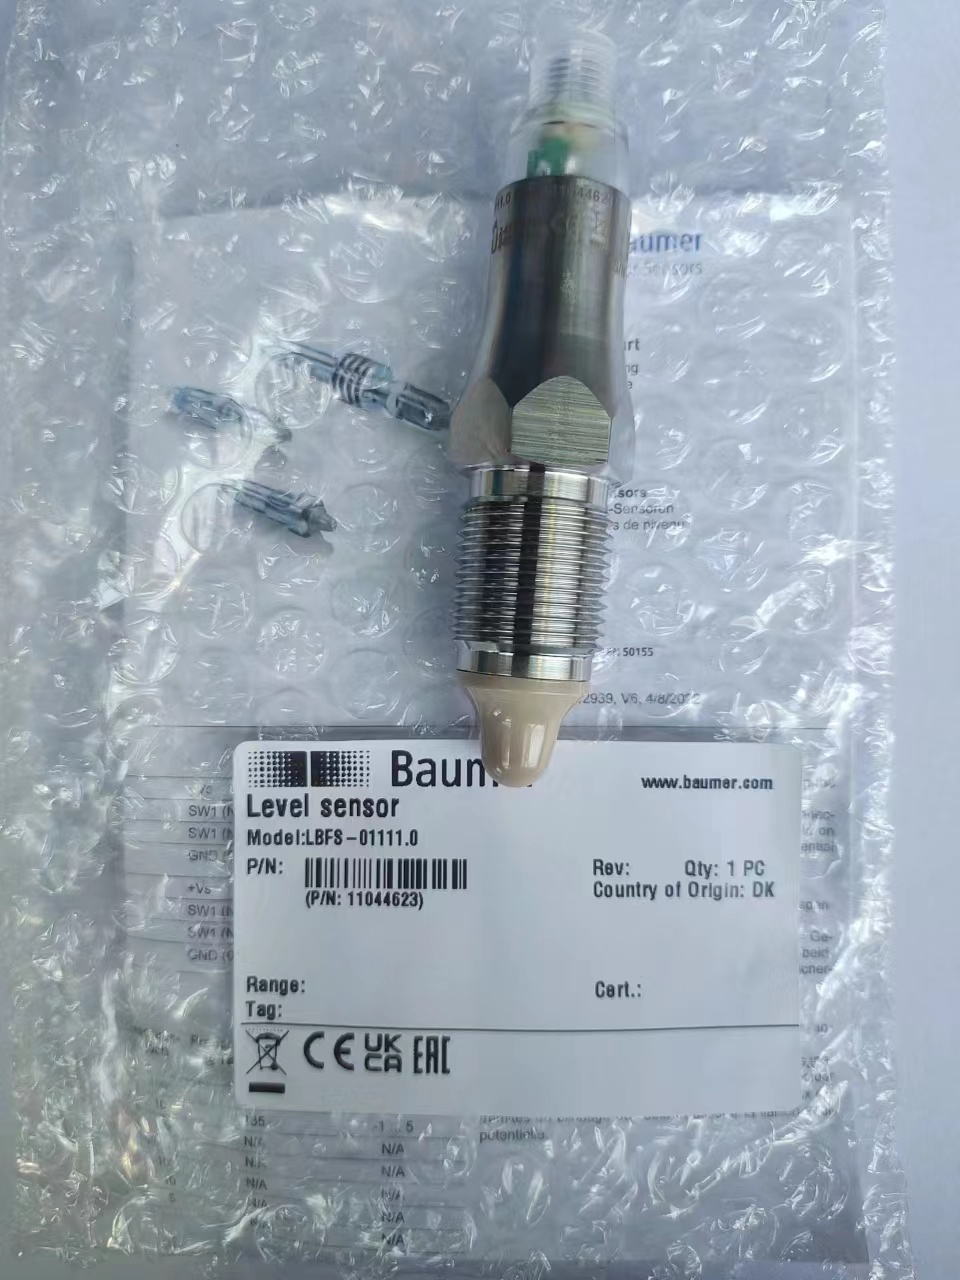 堡盟baumer液位开关LBFS-01111.0